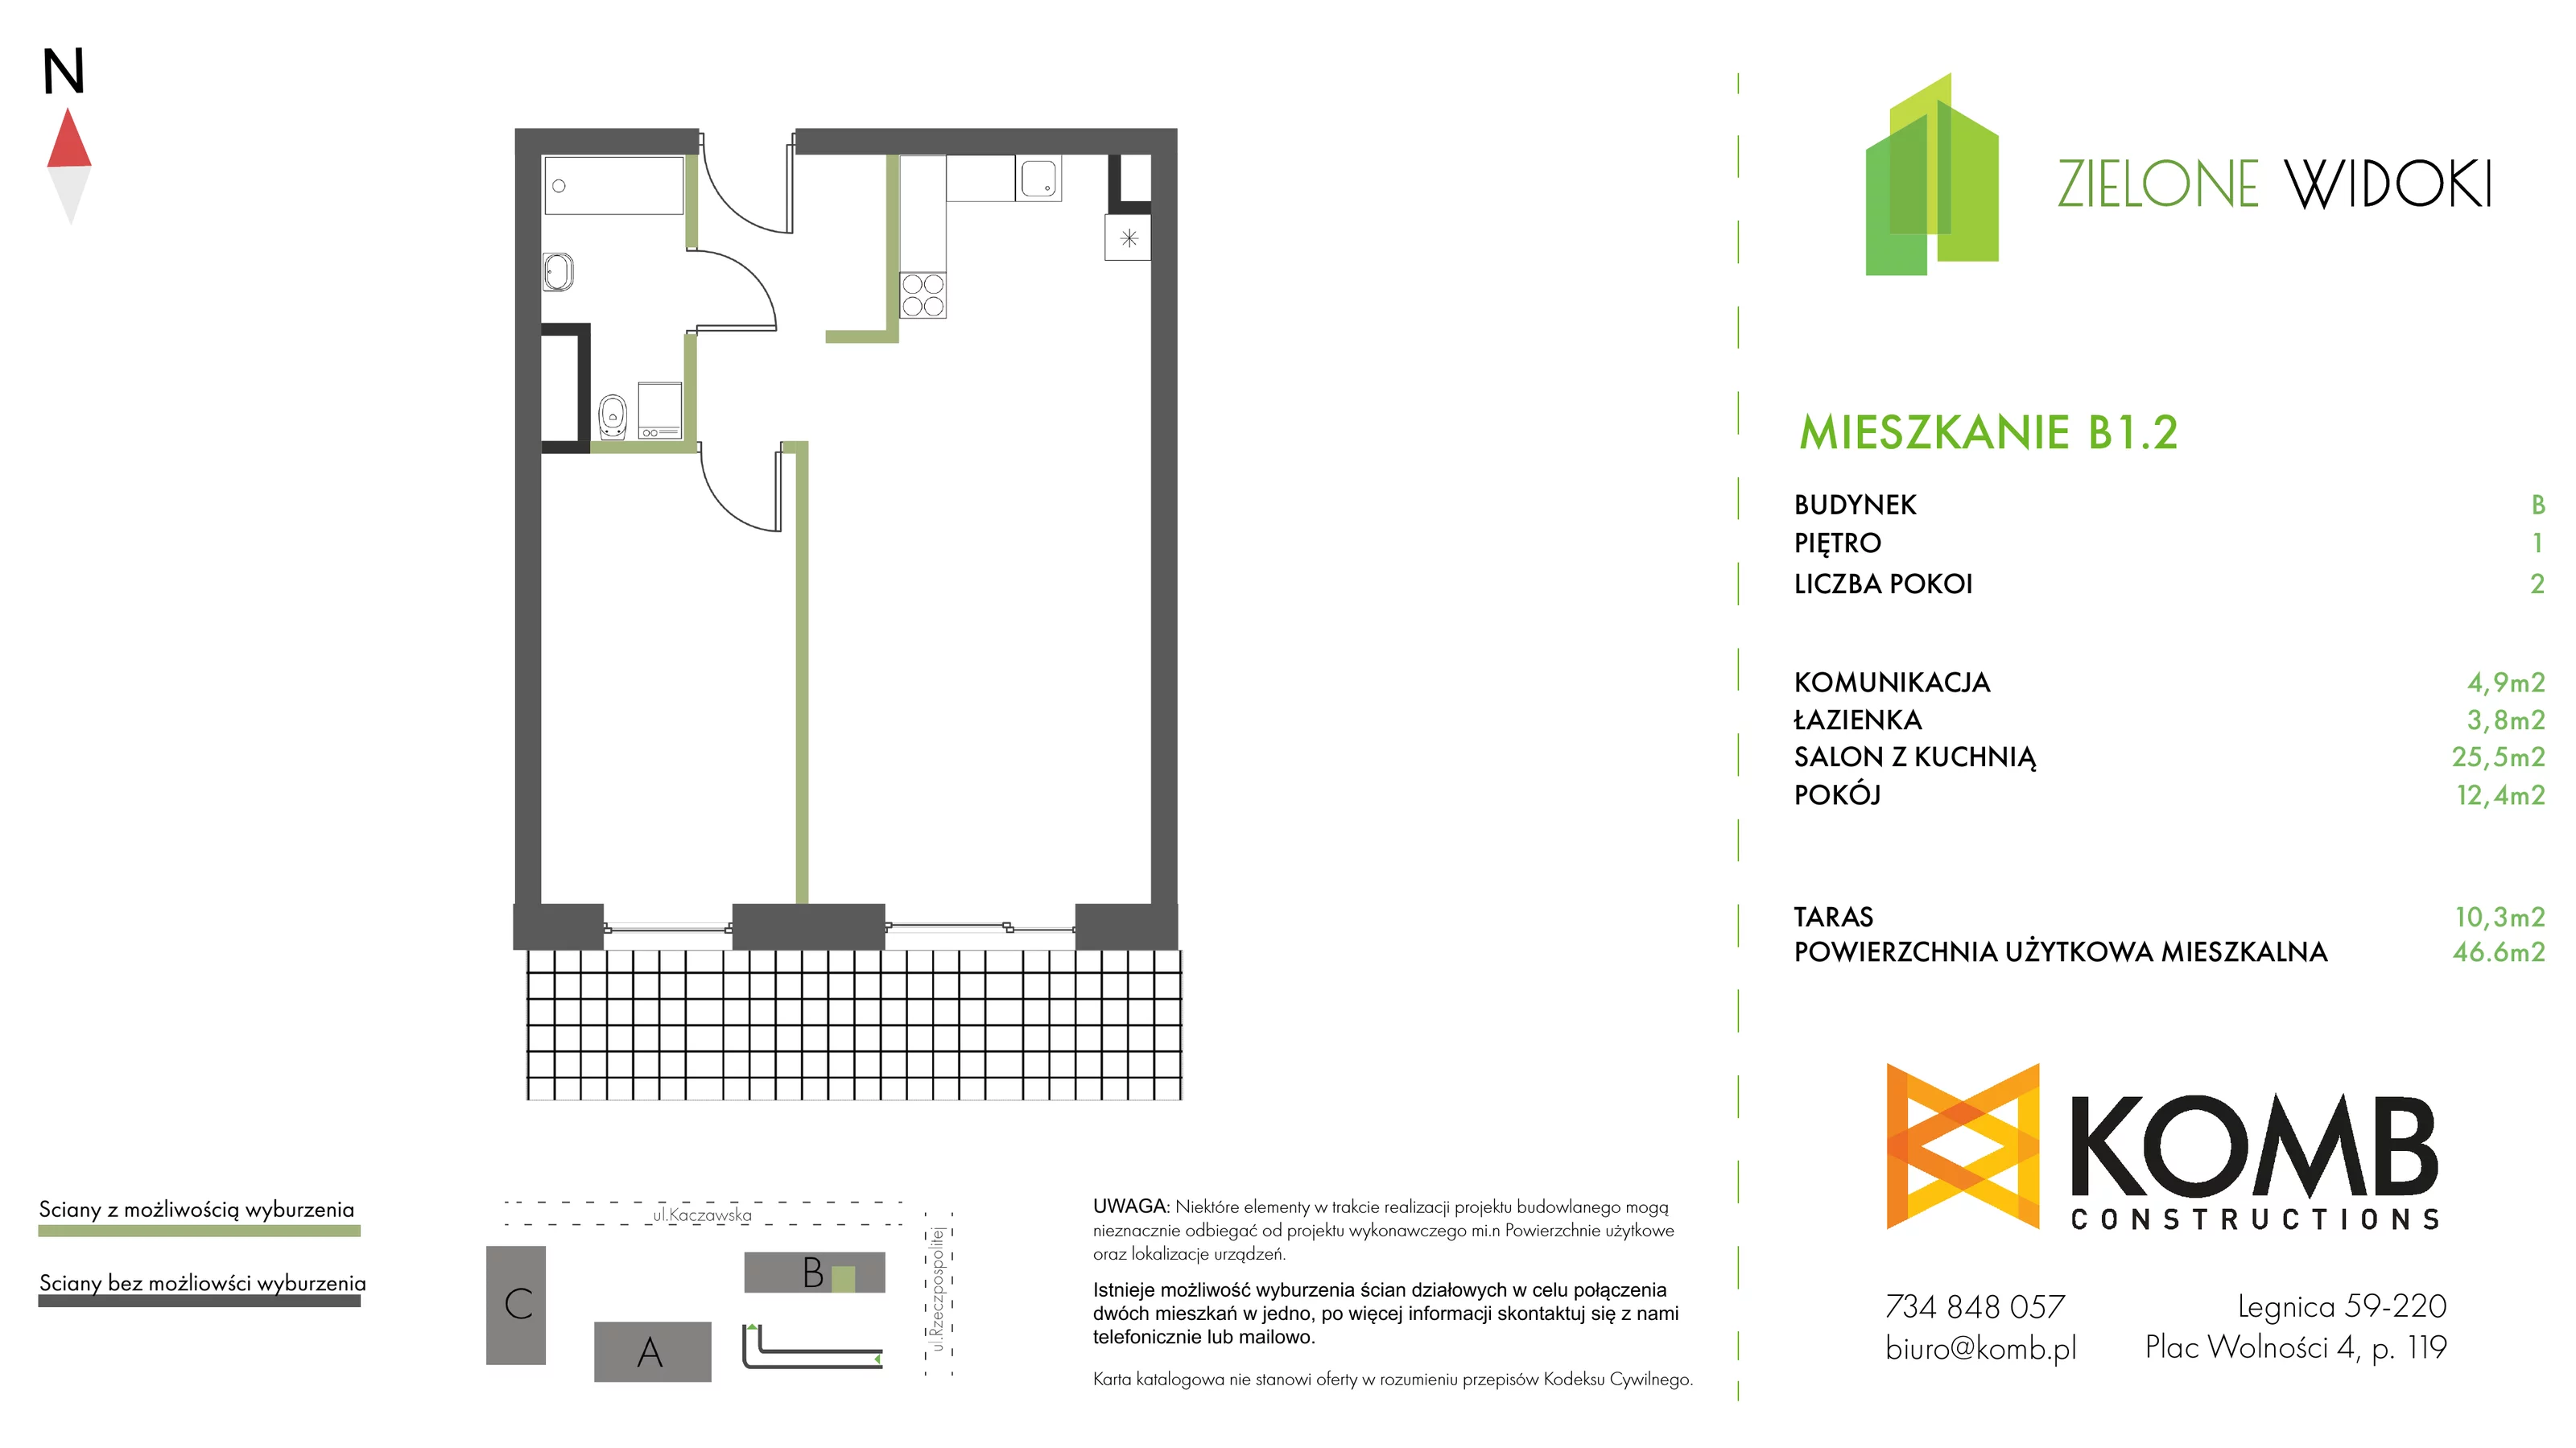 Mieszkanie 46,60 m², piętro 1, oferta nr B1.2, Zielone Widoki, Legnica, Bielany, al. Rzeczypospolitej 23